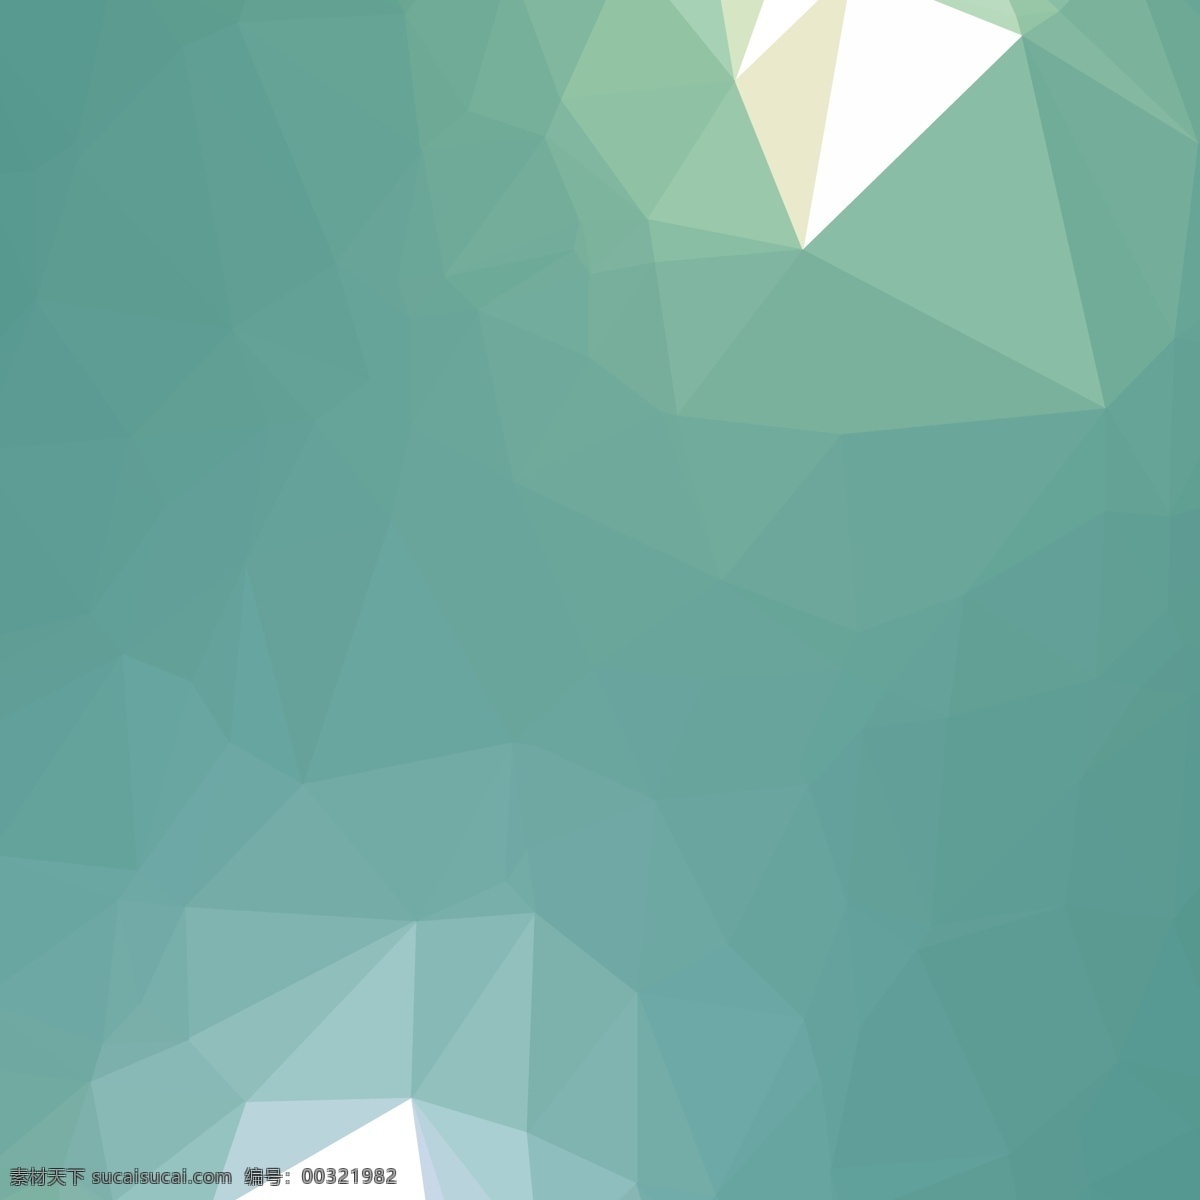 低 多边形 几何 三角 背景 抽象 绿色 三角形 形状 壁纸 现代 颜色 抽象的形状 低多边形